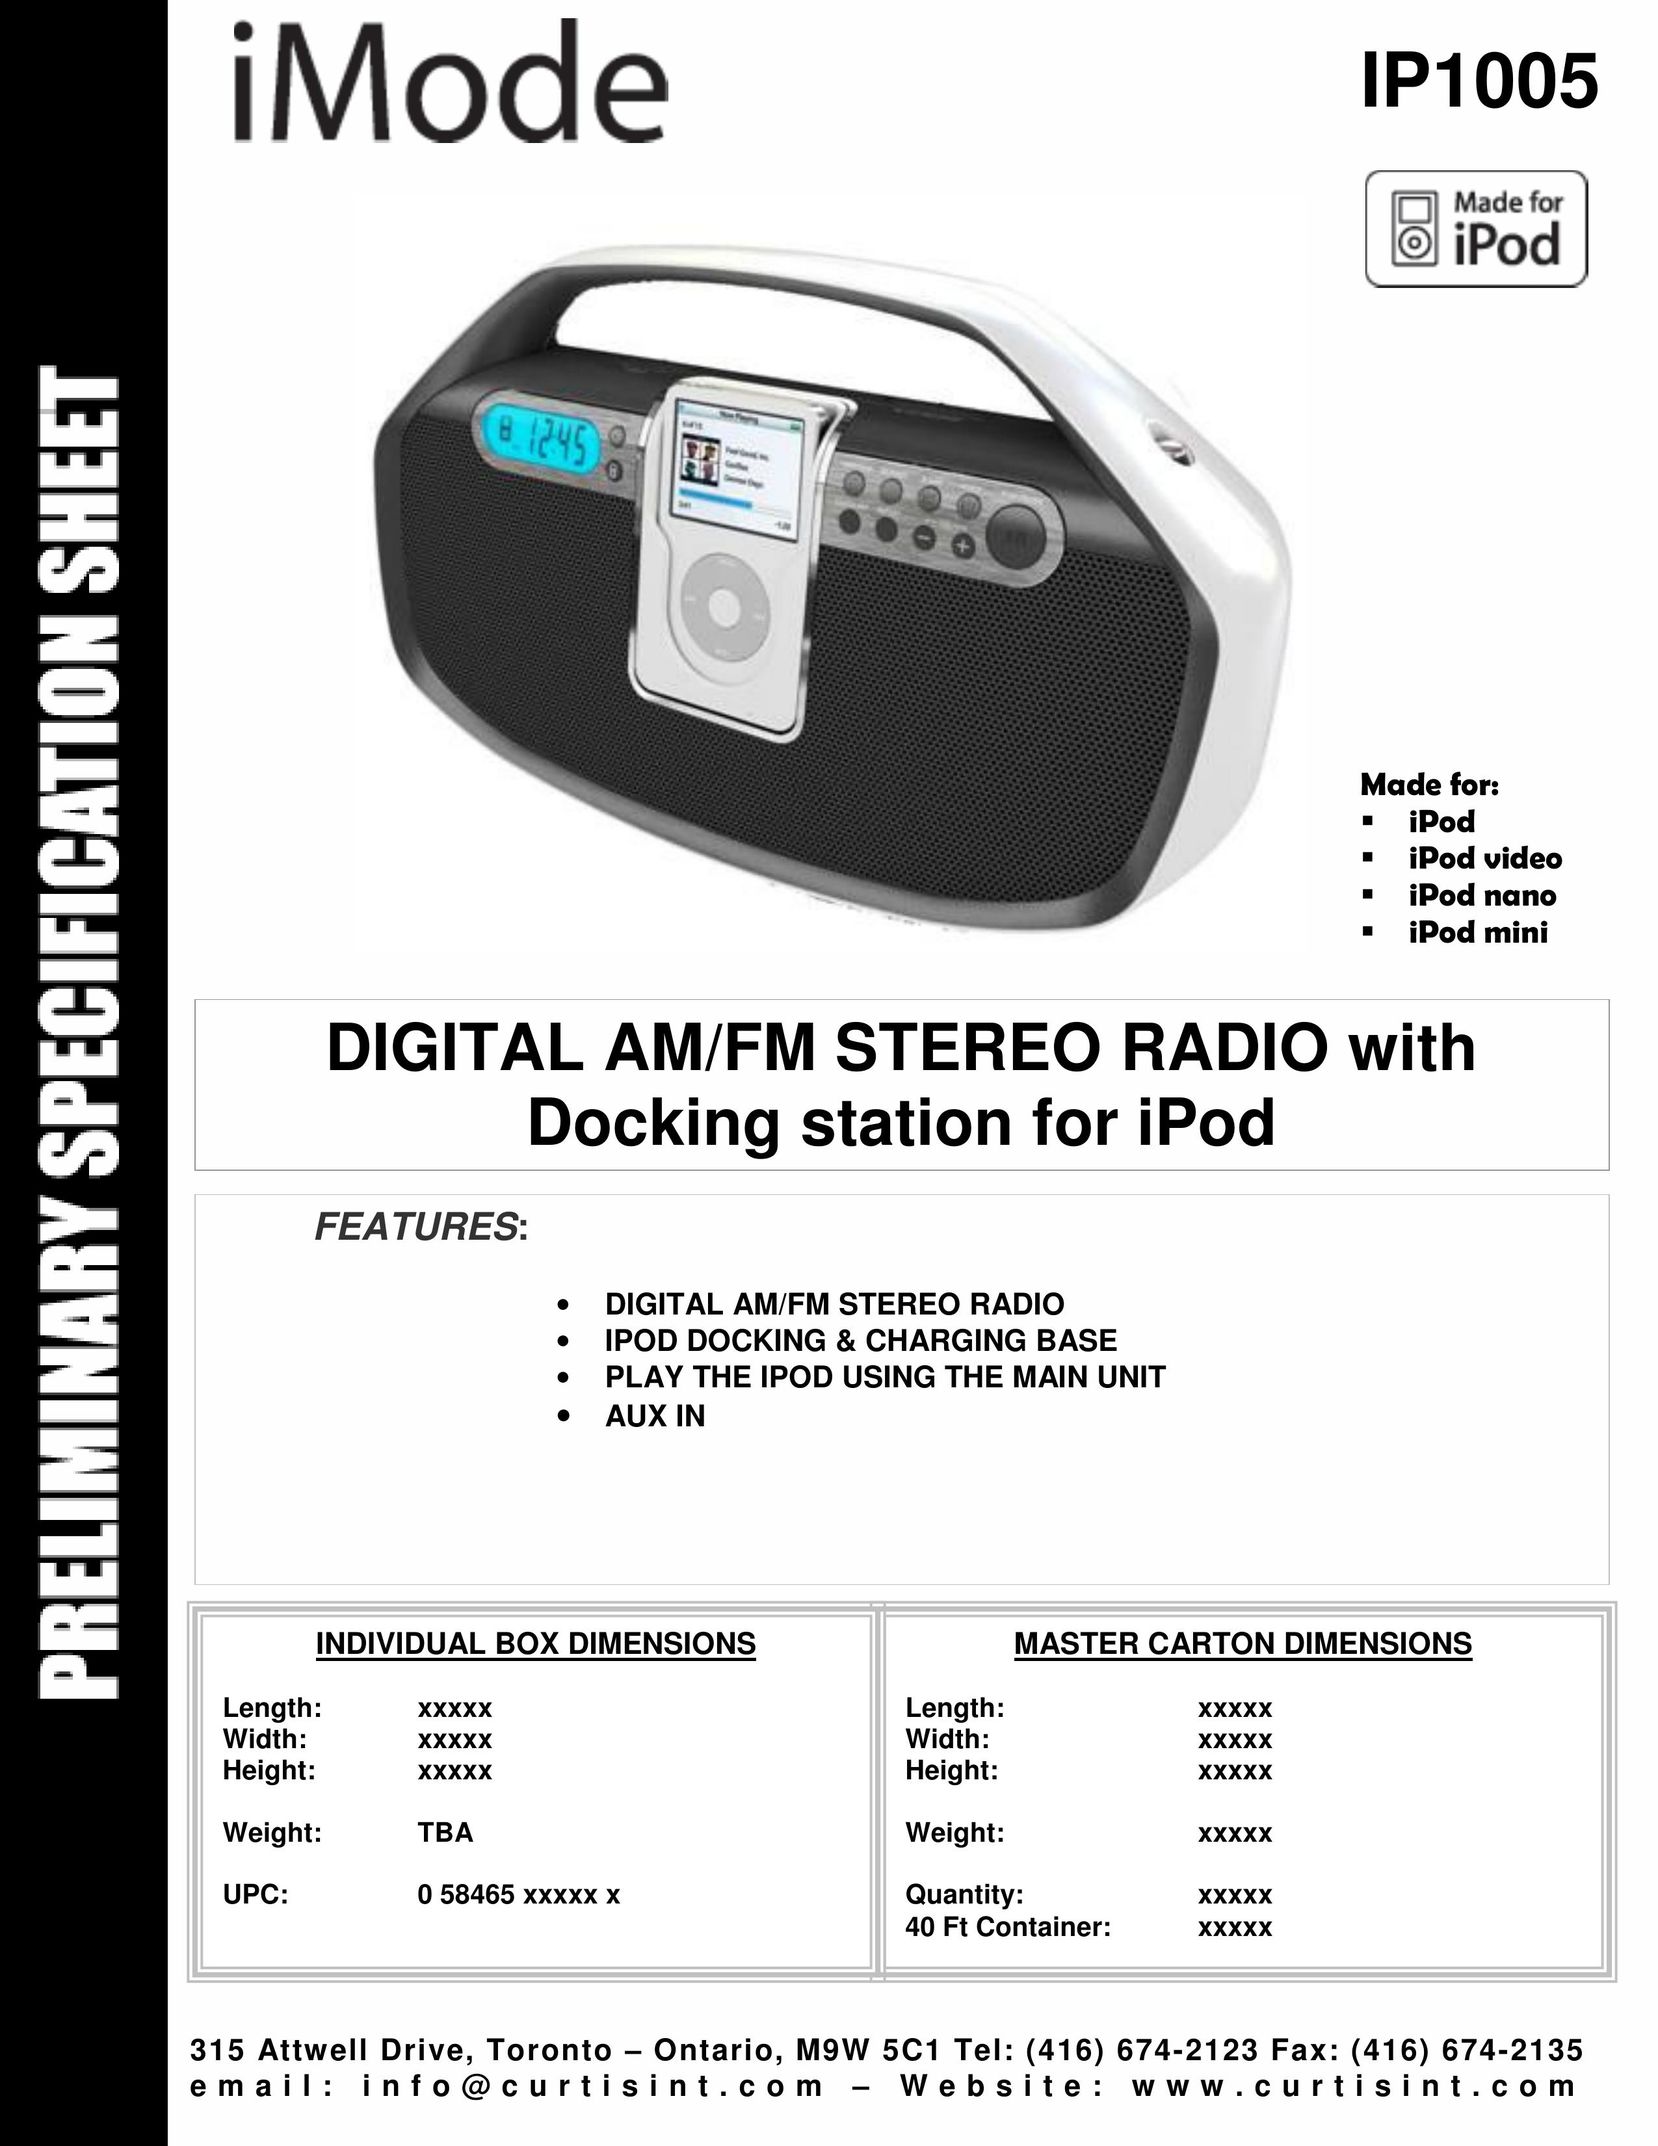 Curtis IP1005 MP3 Docking Station User Manual